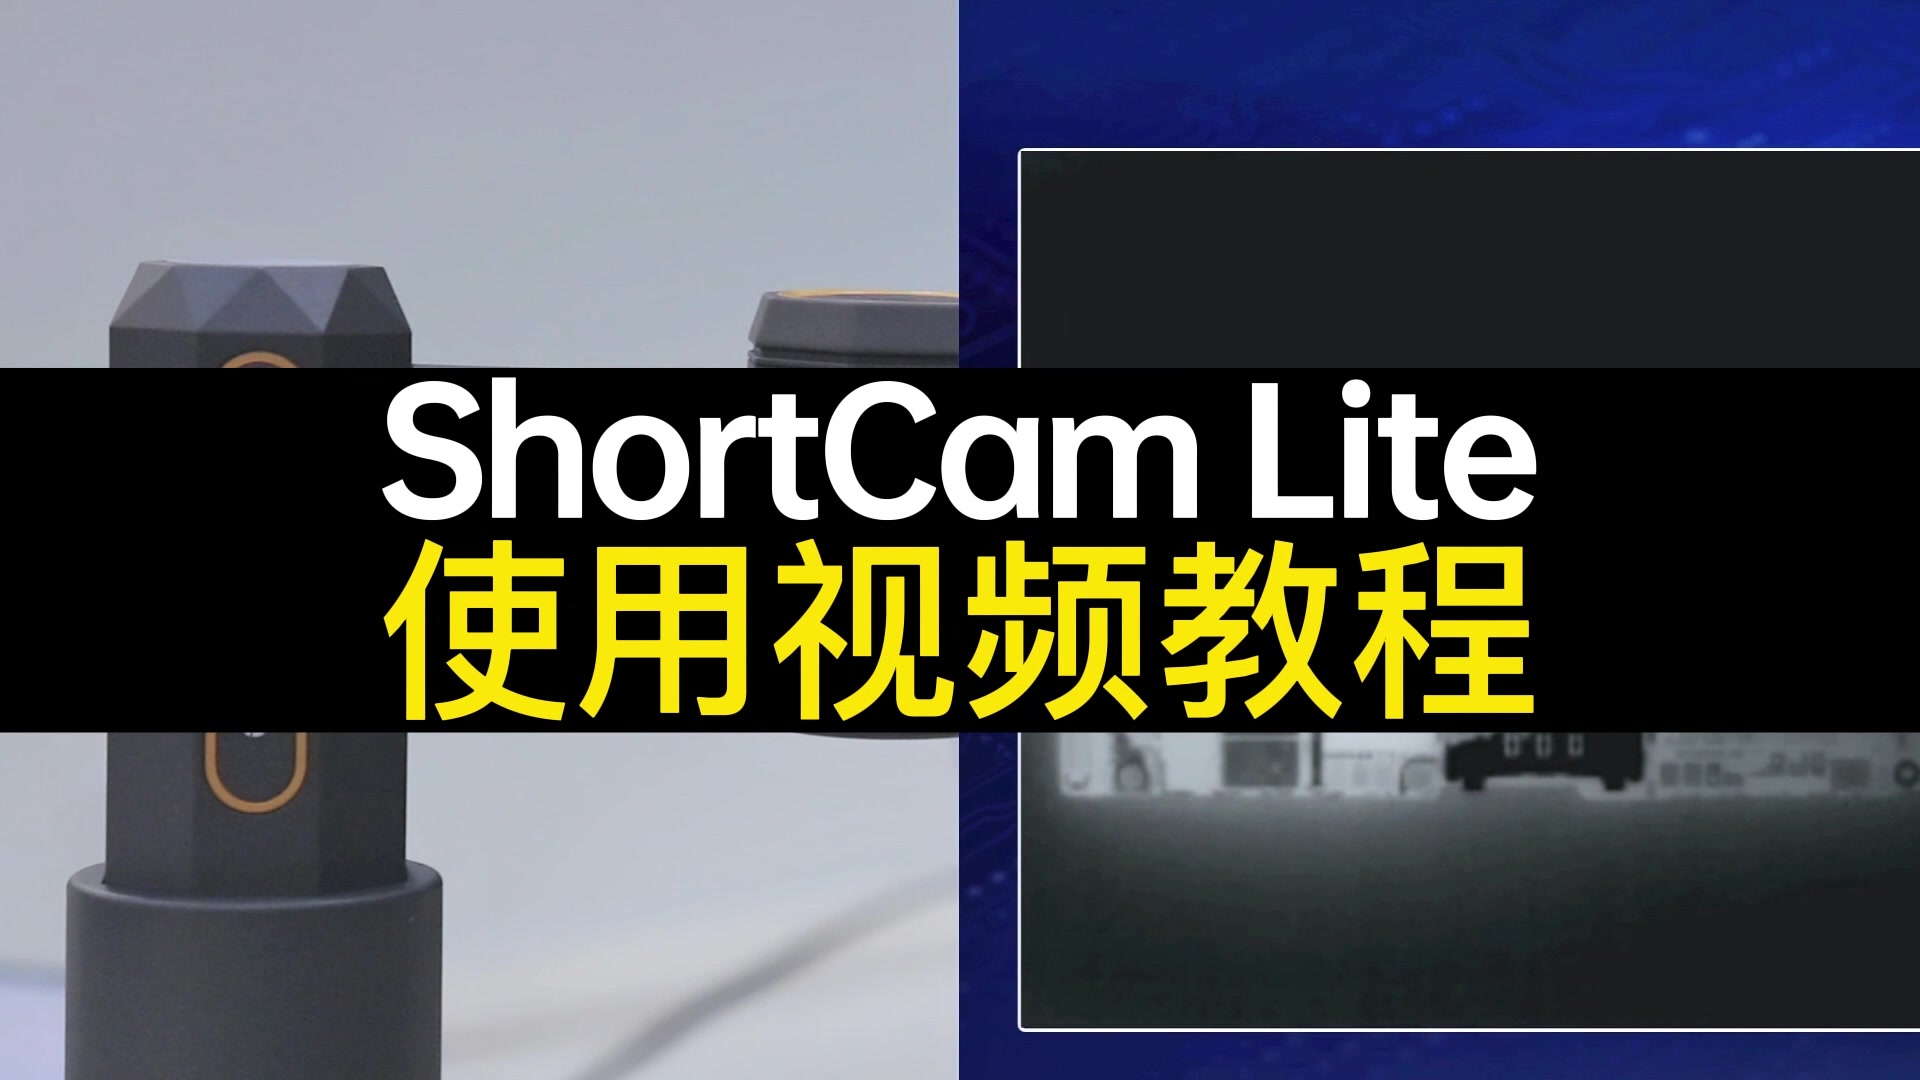 单光PCB速诊仪ShortCam Lite使用视频教程